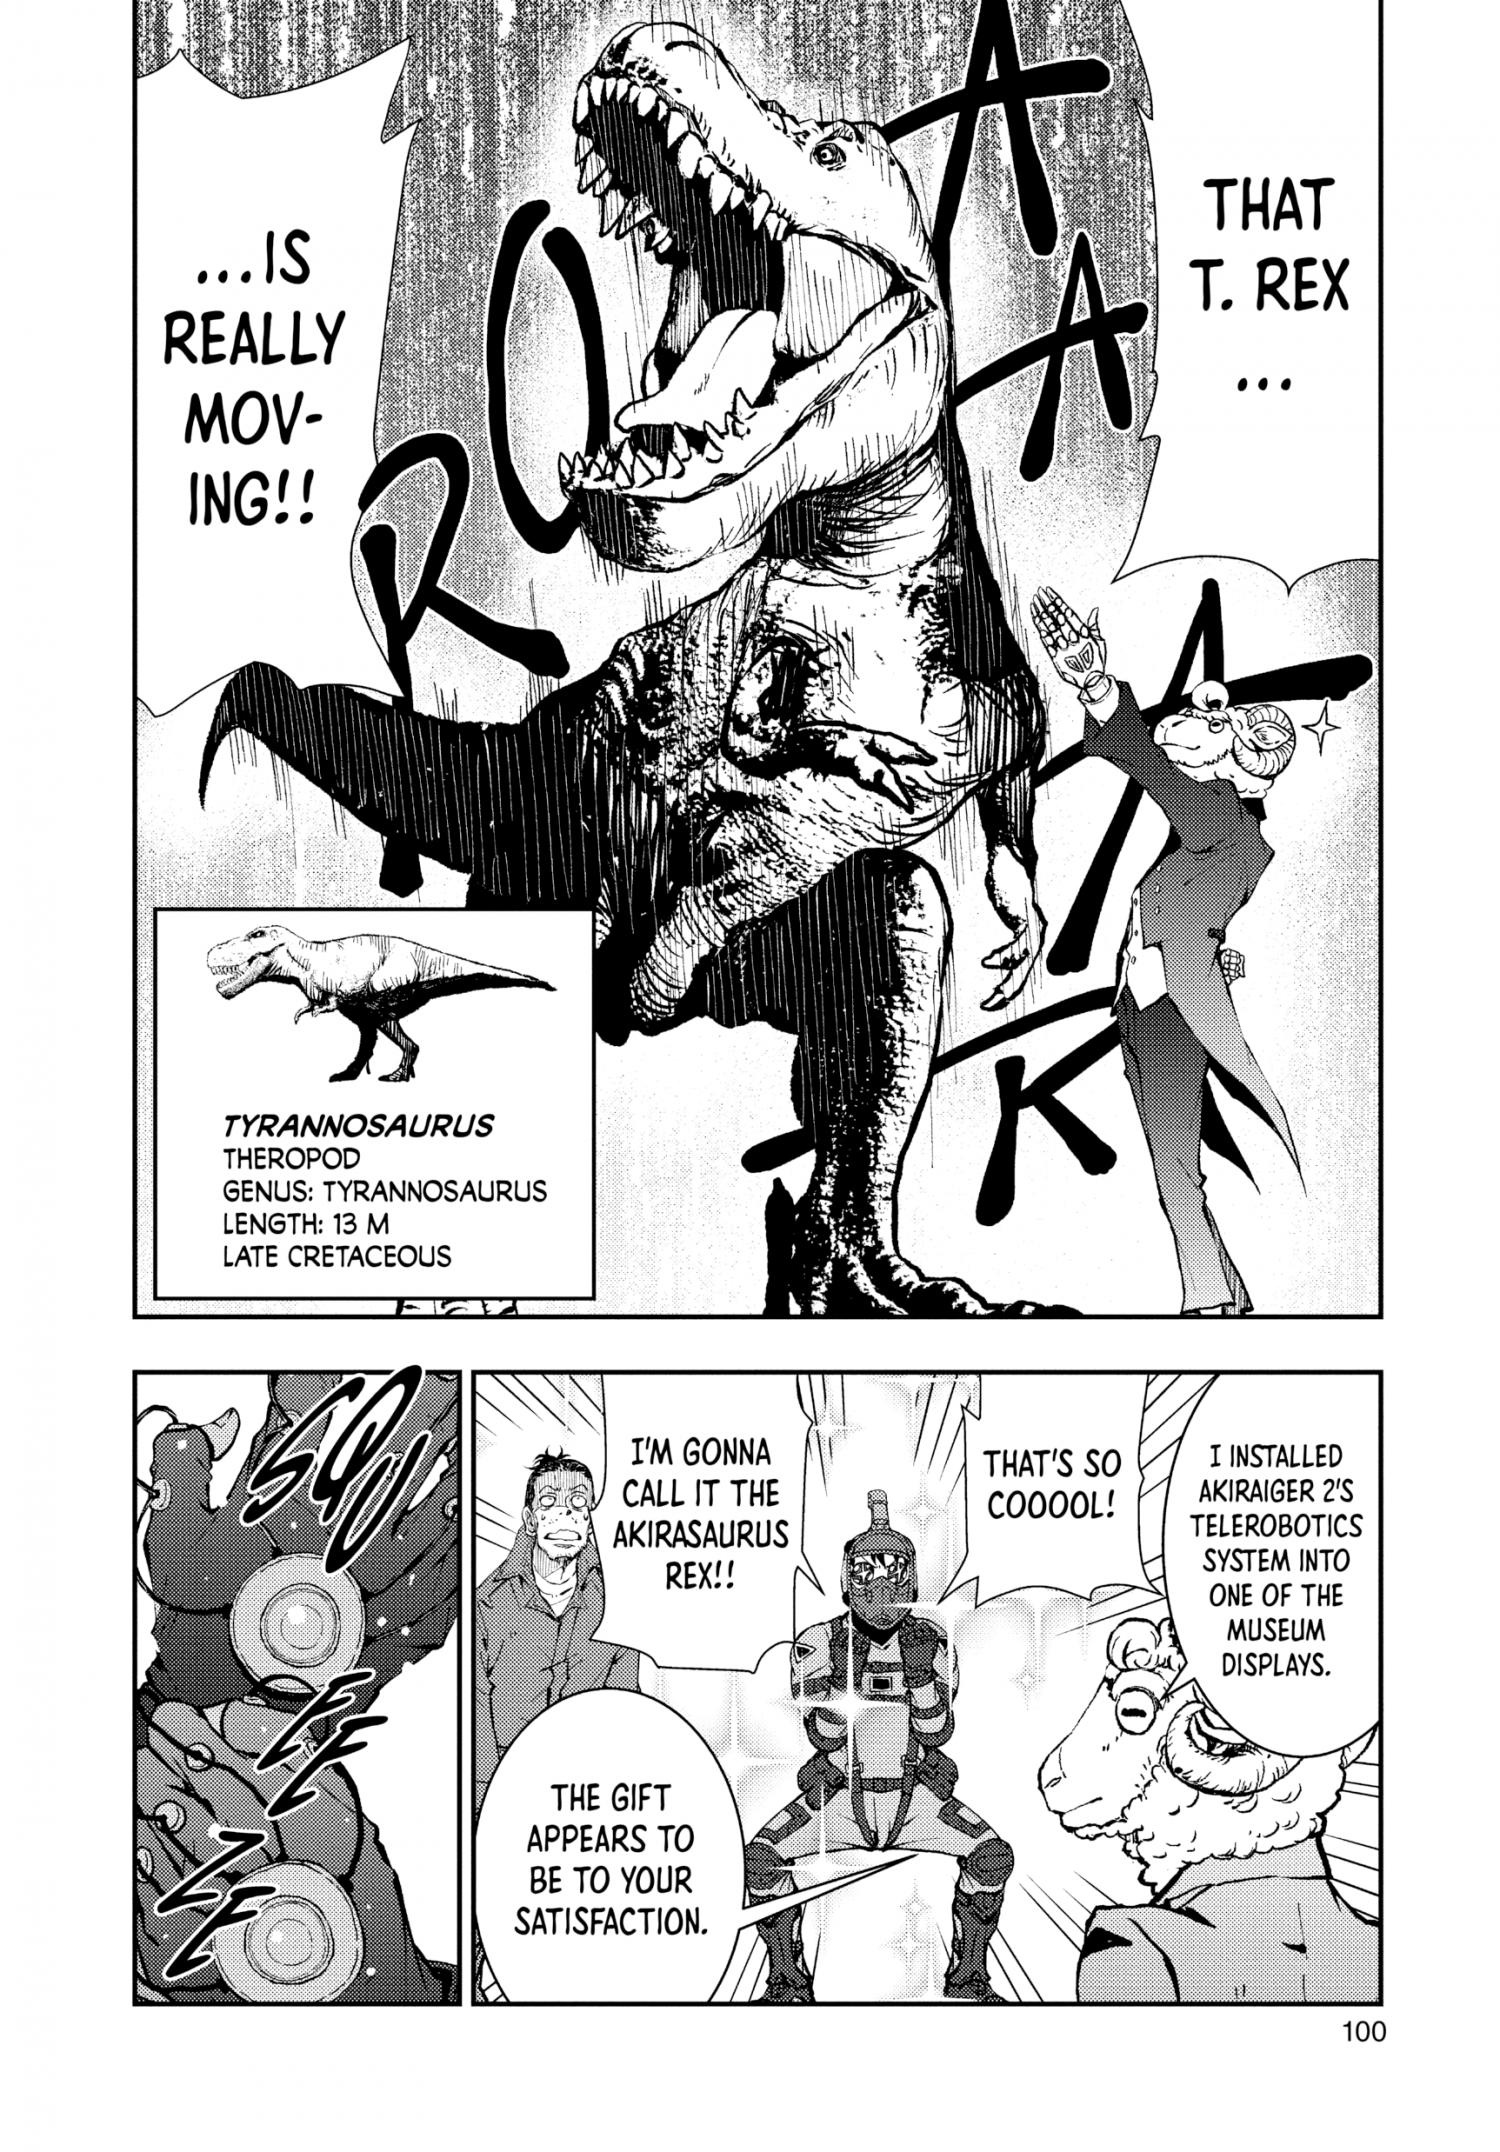 Zombie 100 ~Zombie ni Naru Made ni Shitai 100 no Koto~ Ch.29 Page 19 -  Mangago